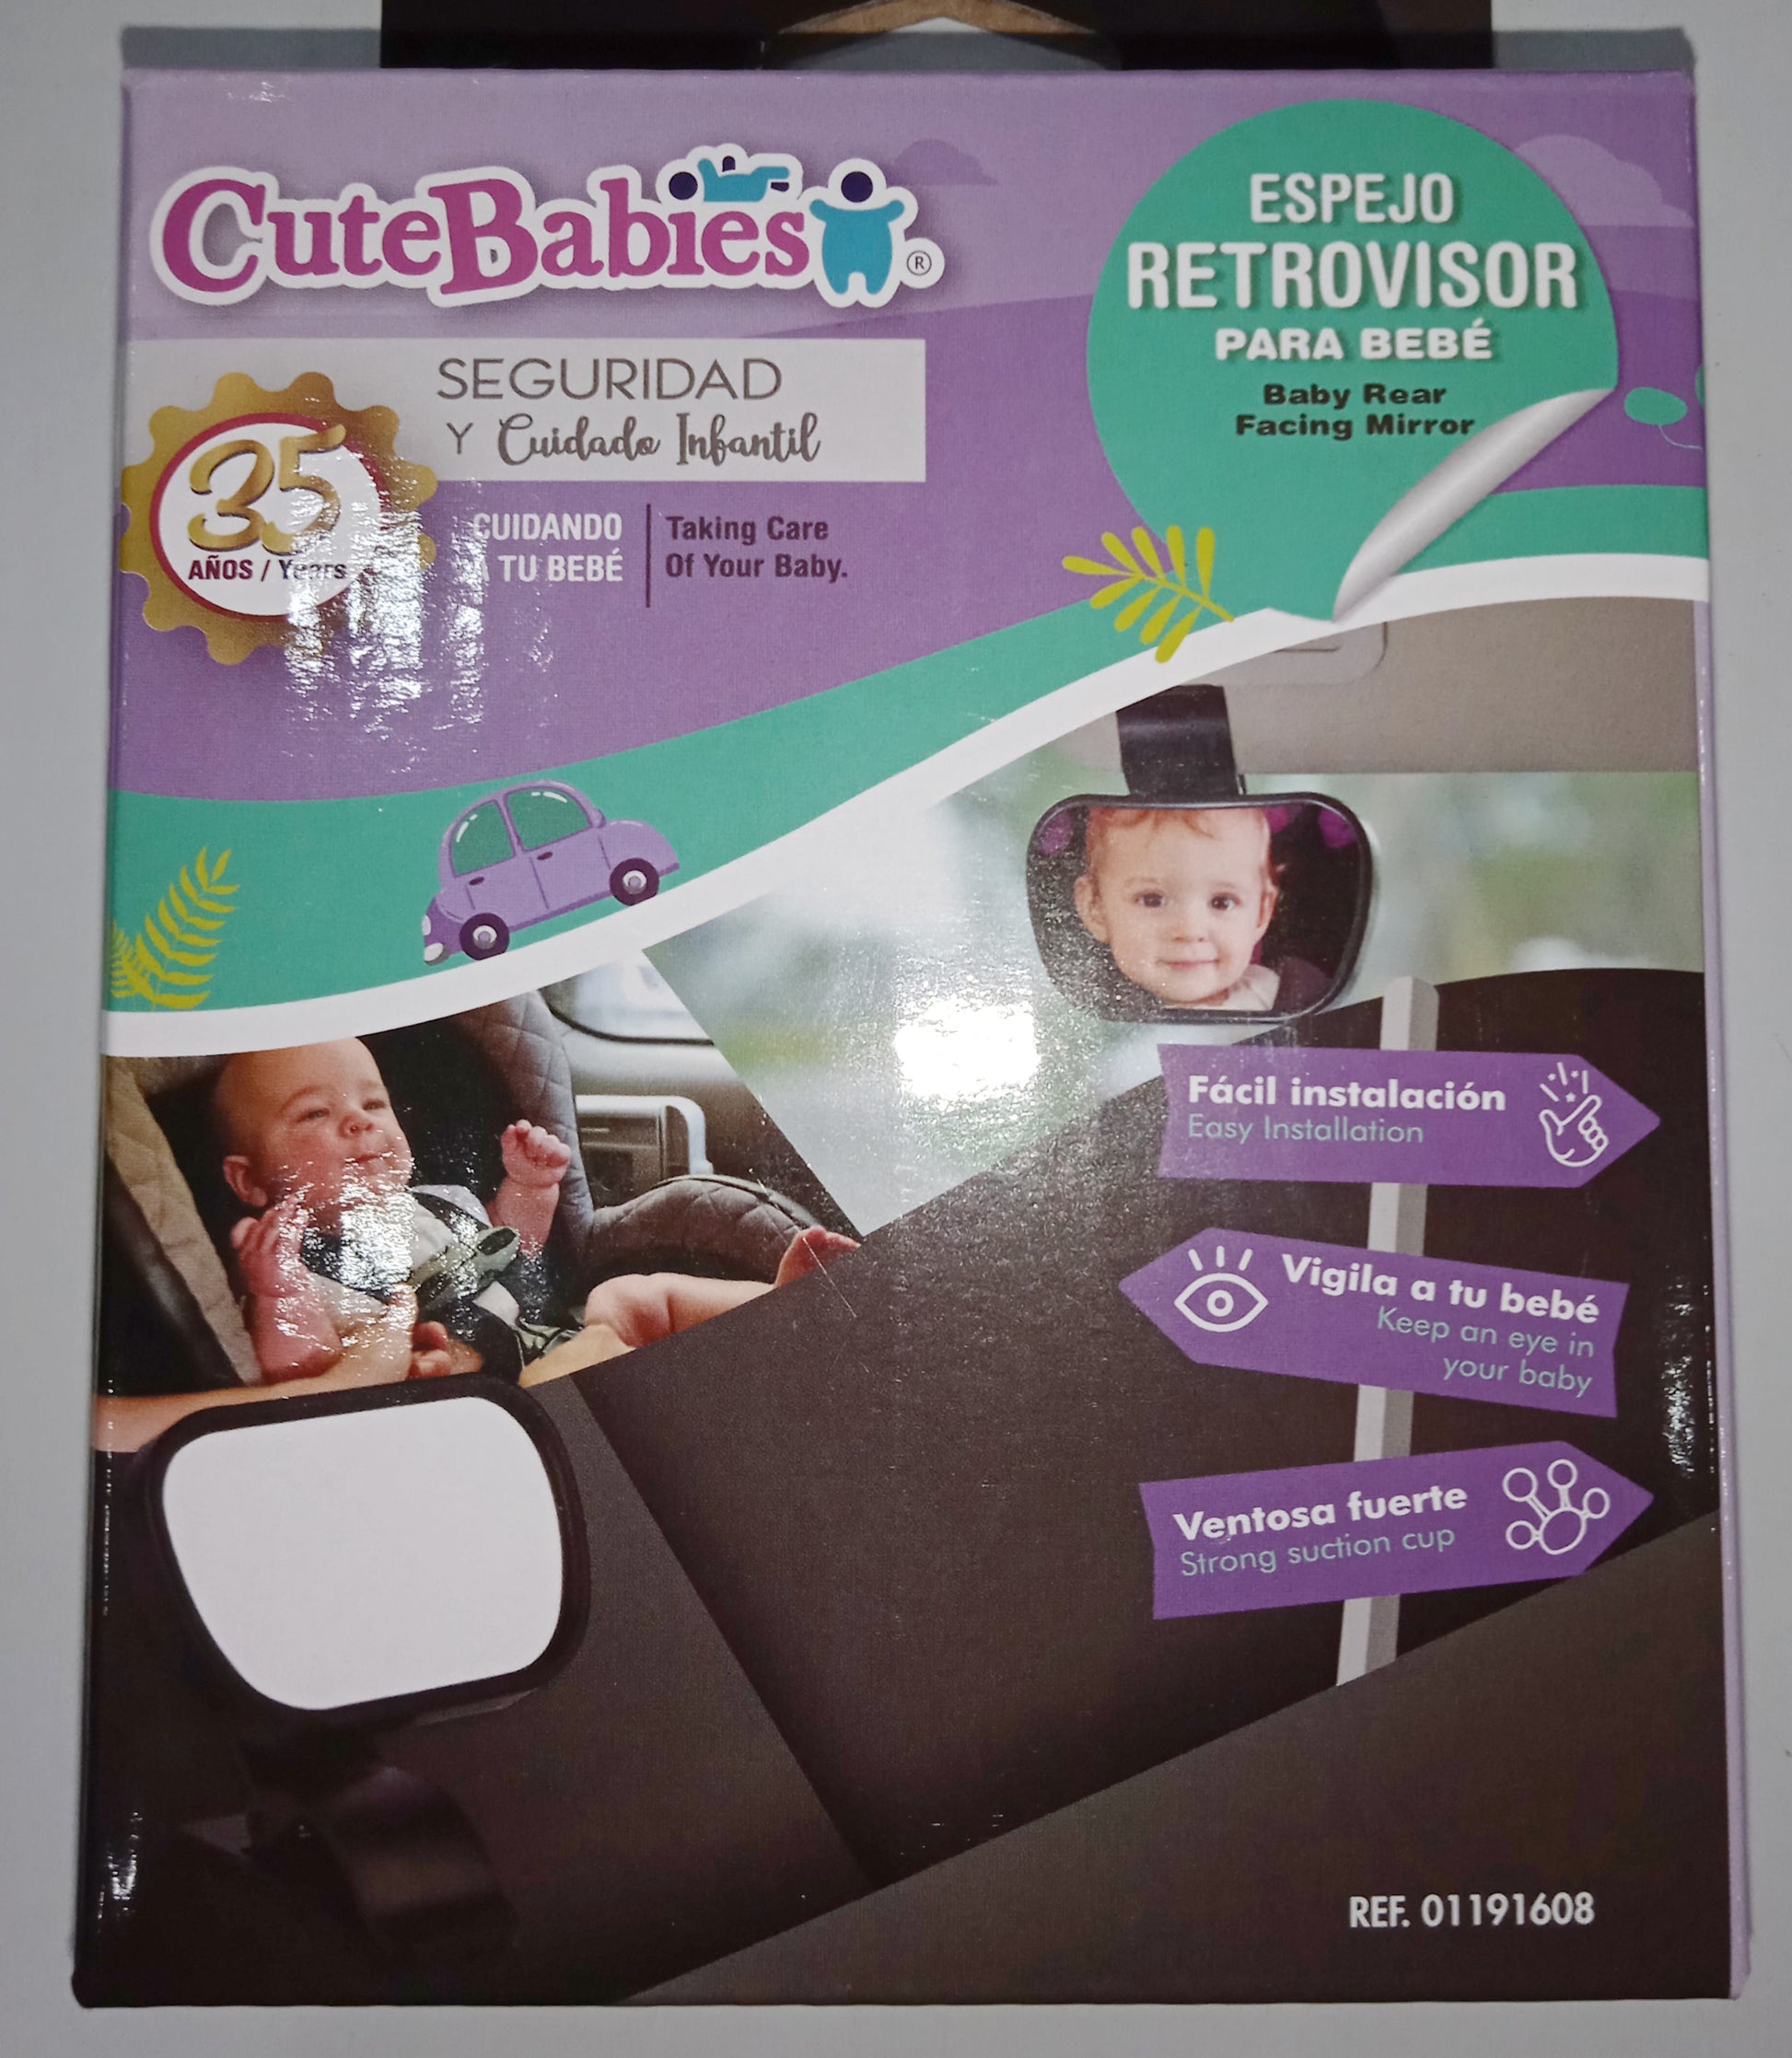 Espejo Retrovisor Extra Grande para Auto para Bebé Redlemon